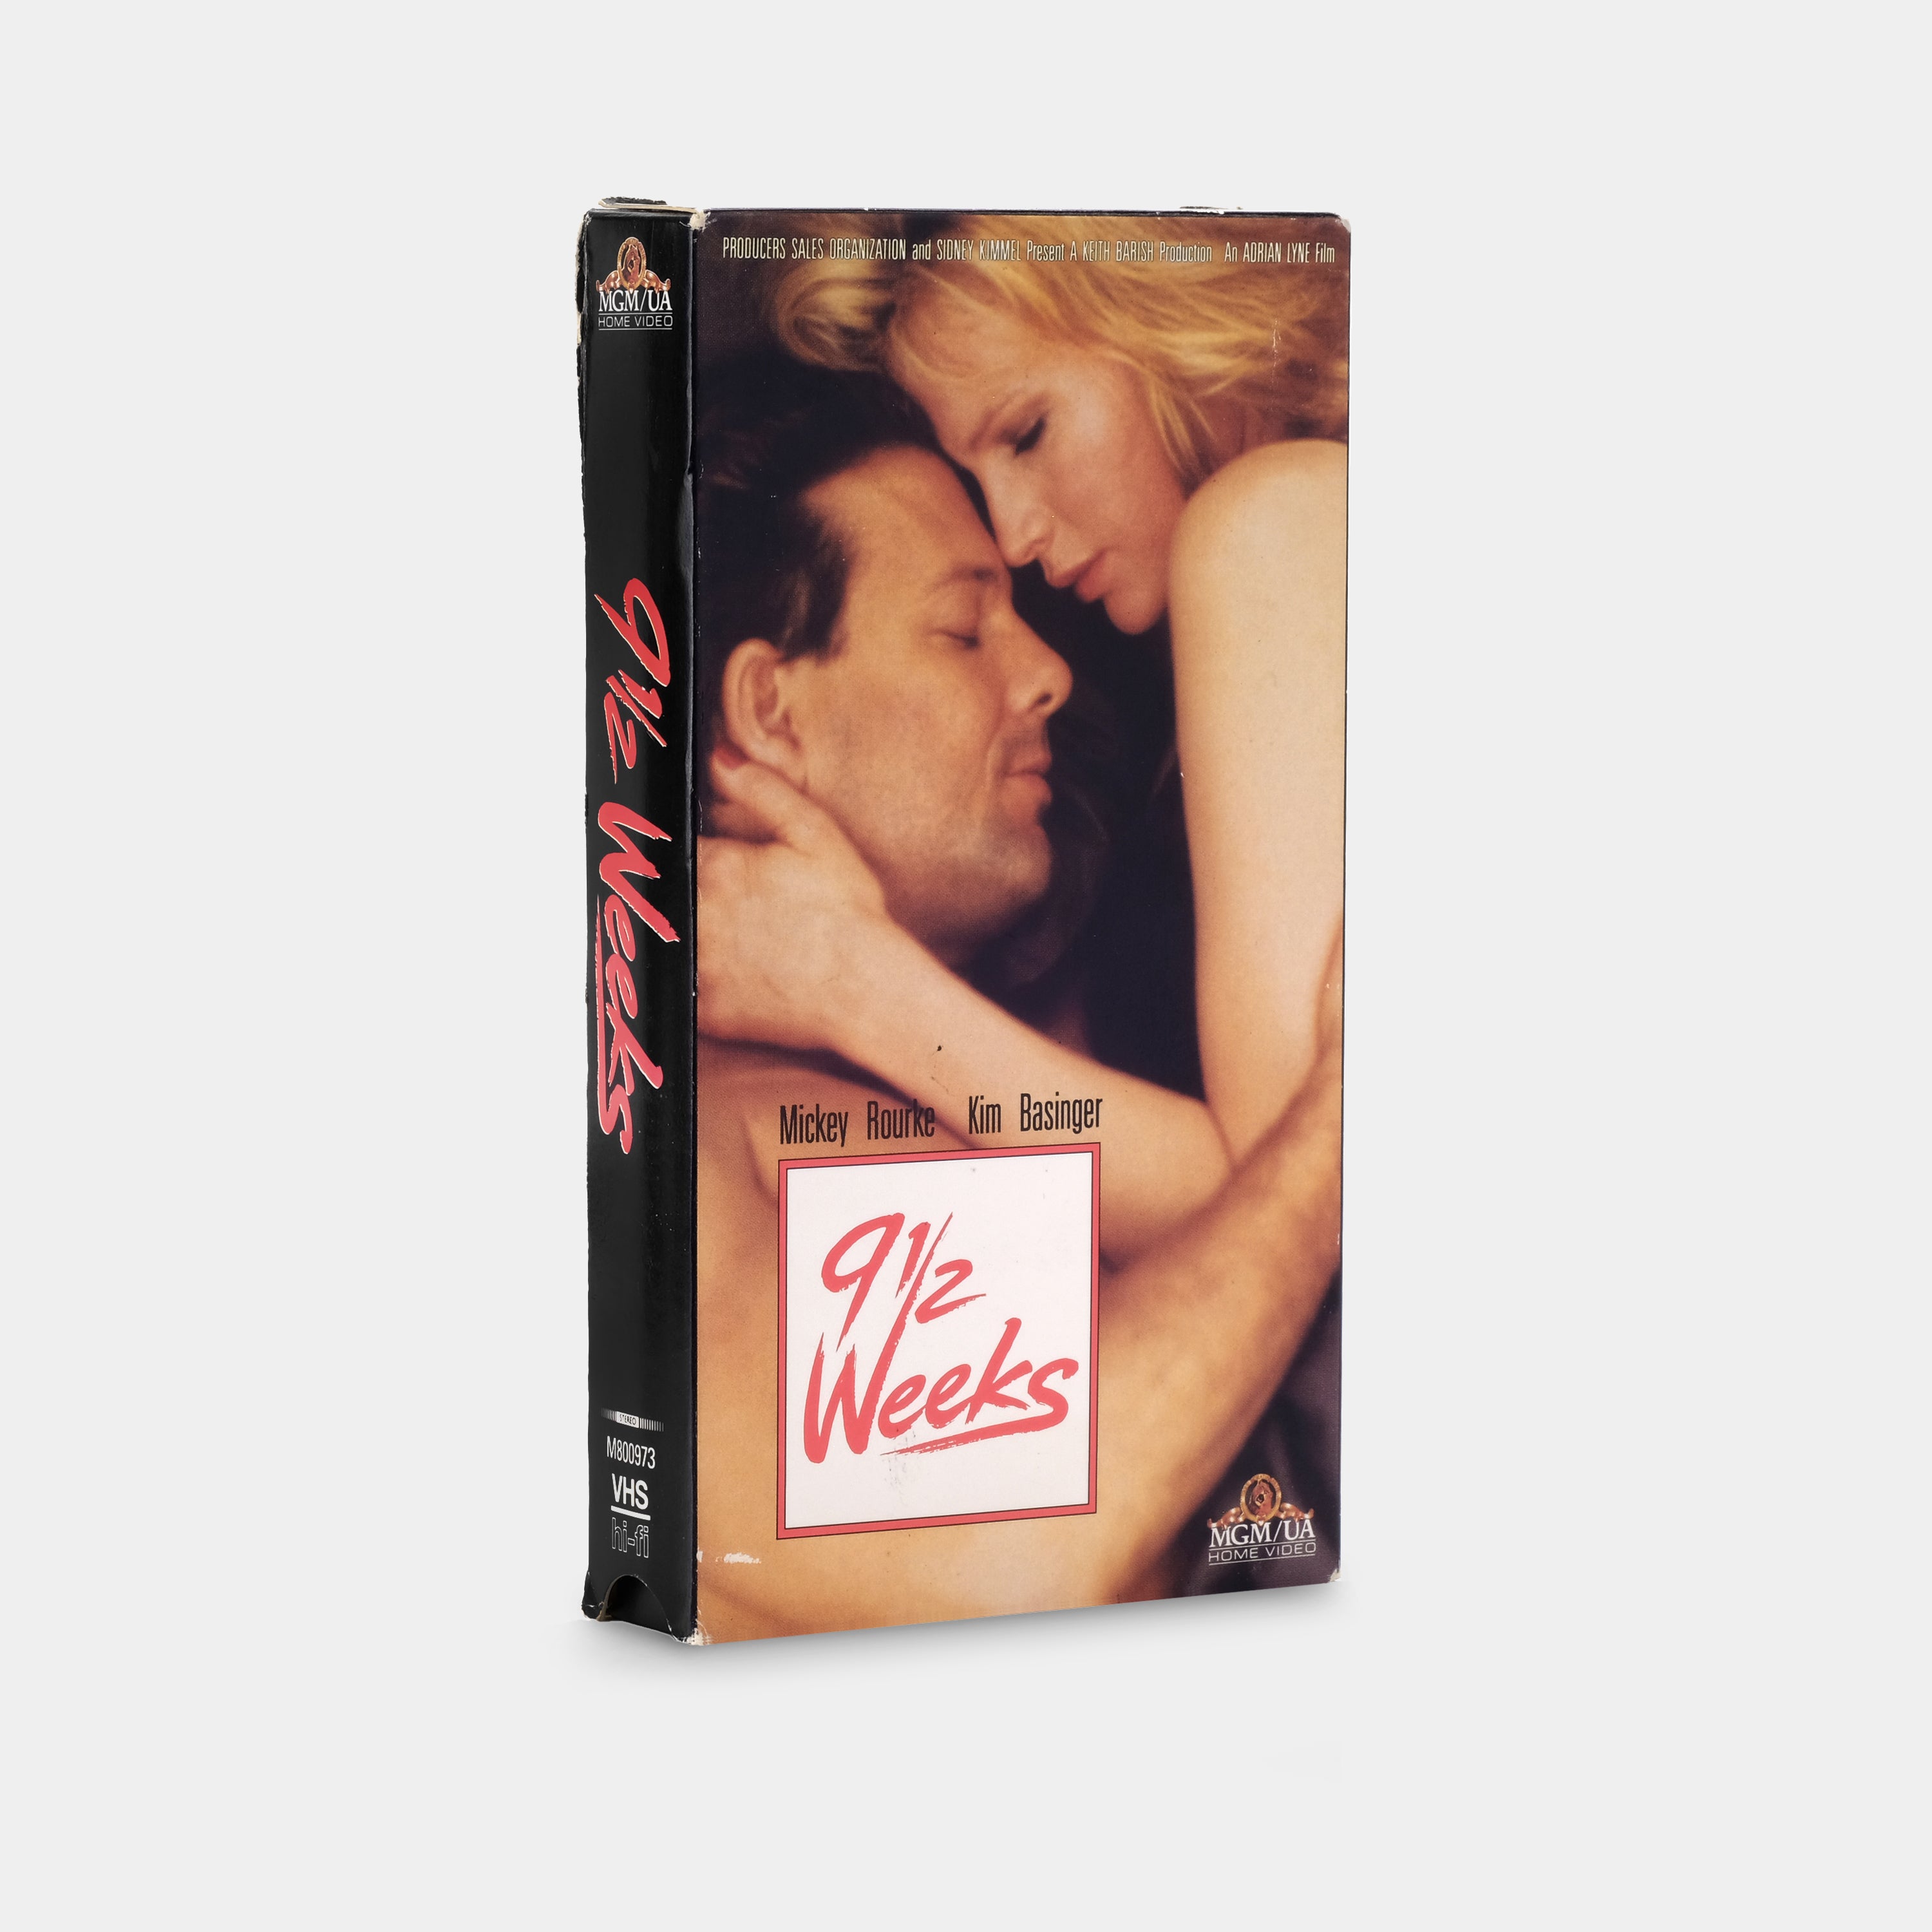 9 1/2 Weeks VHS Tape